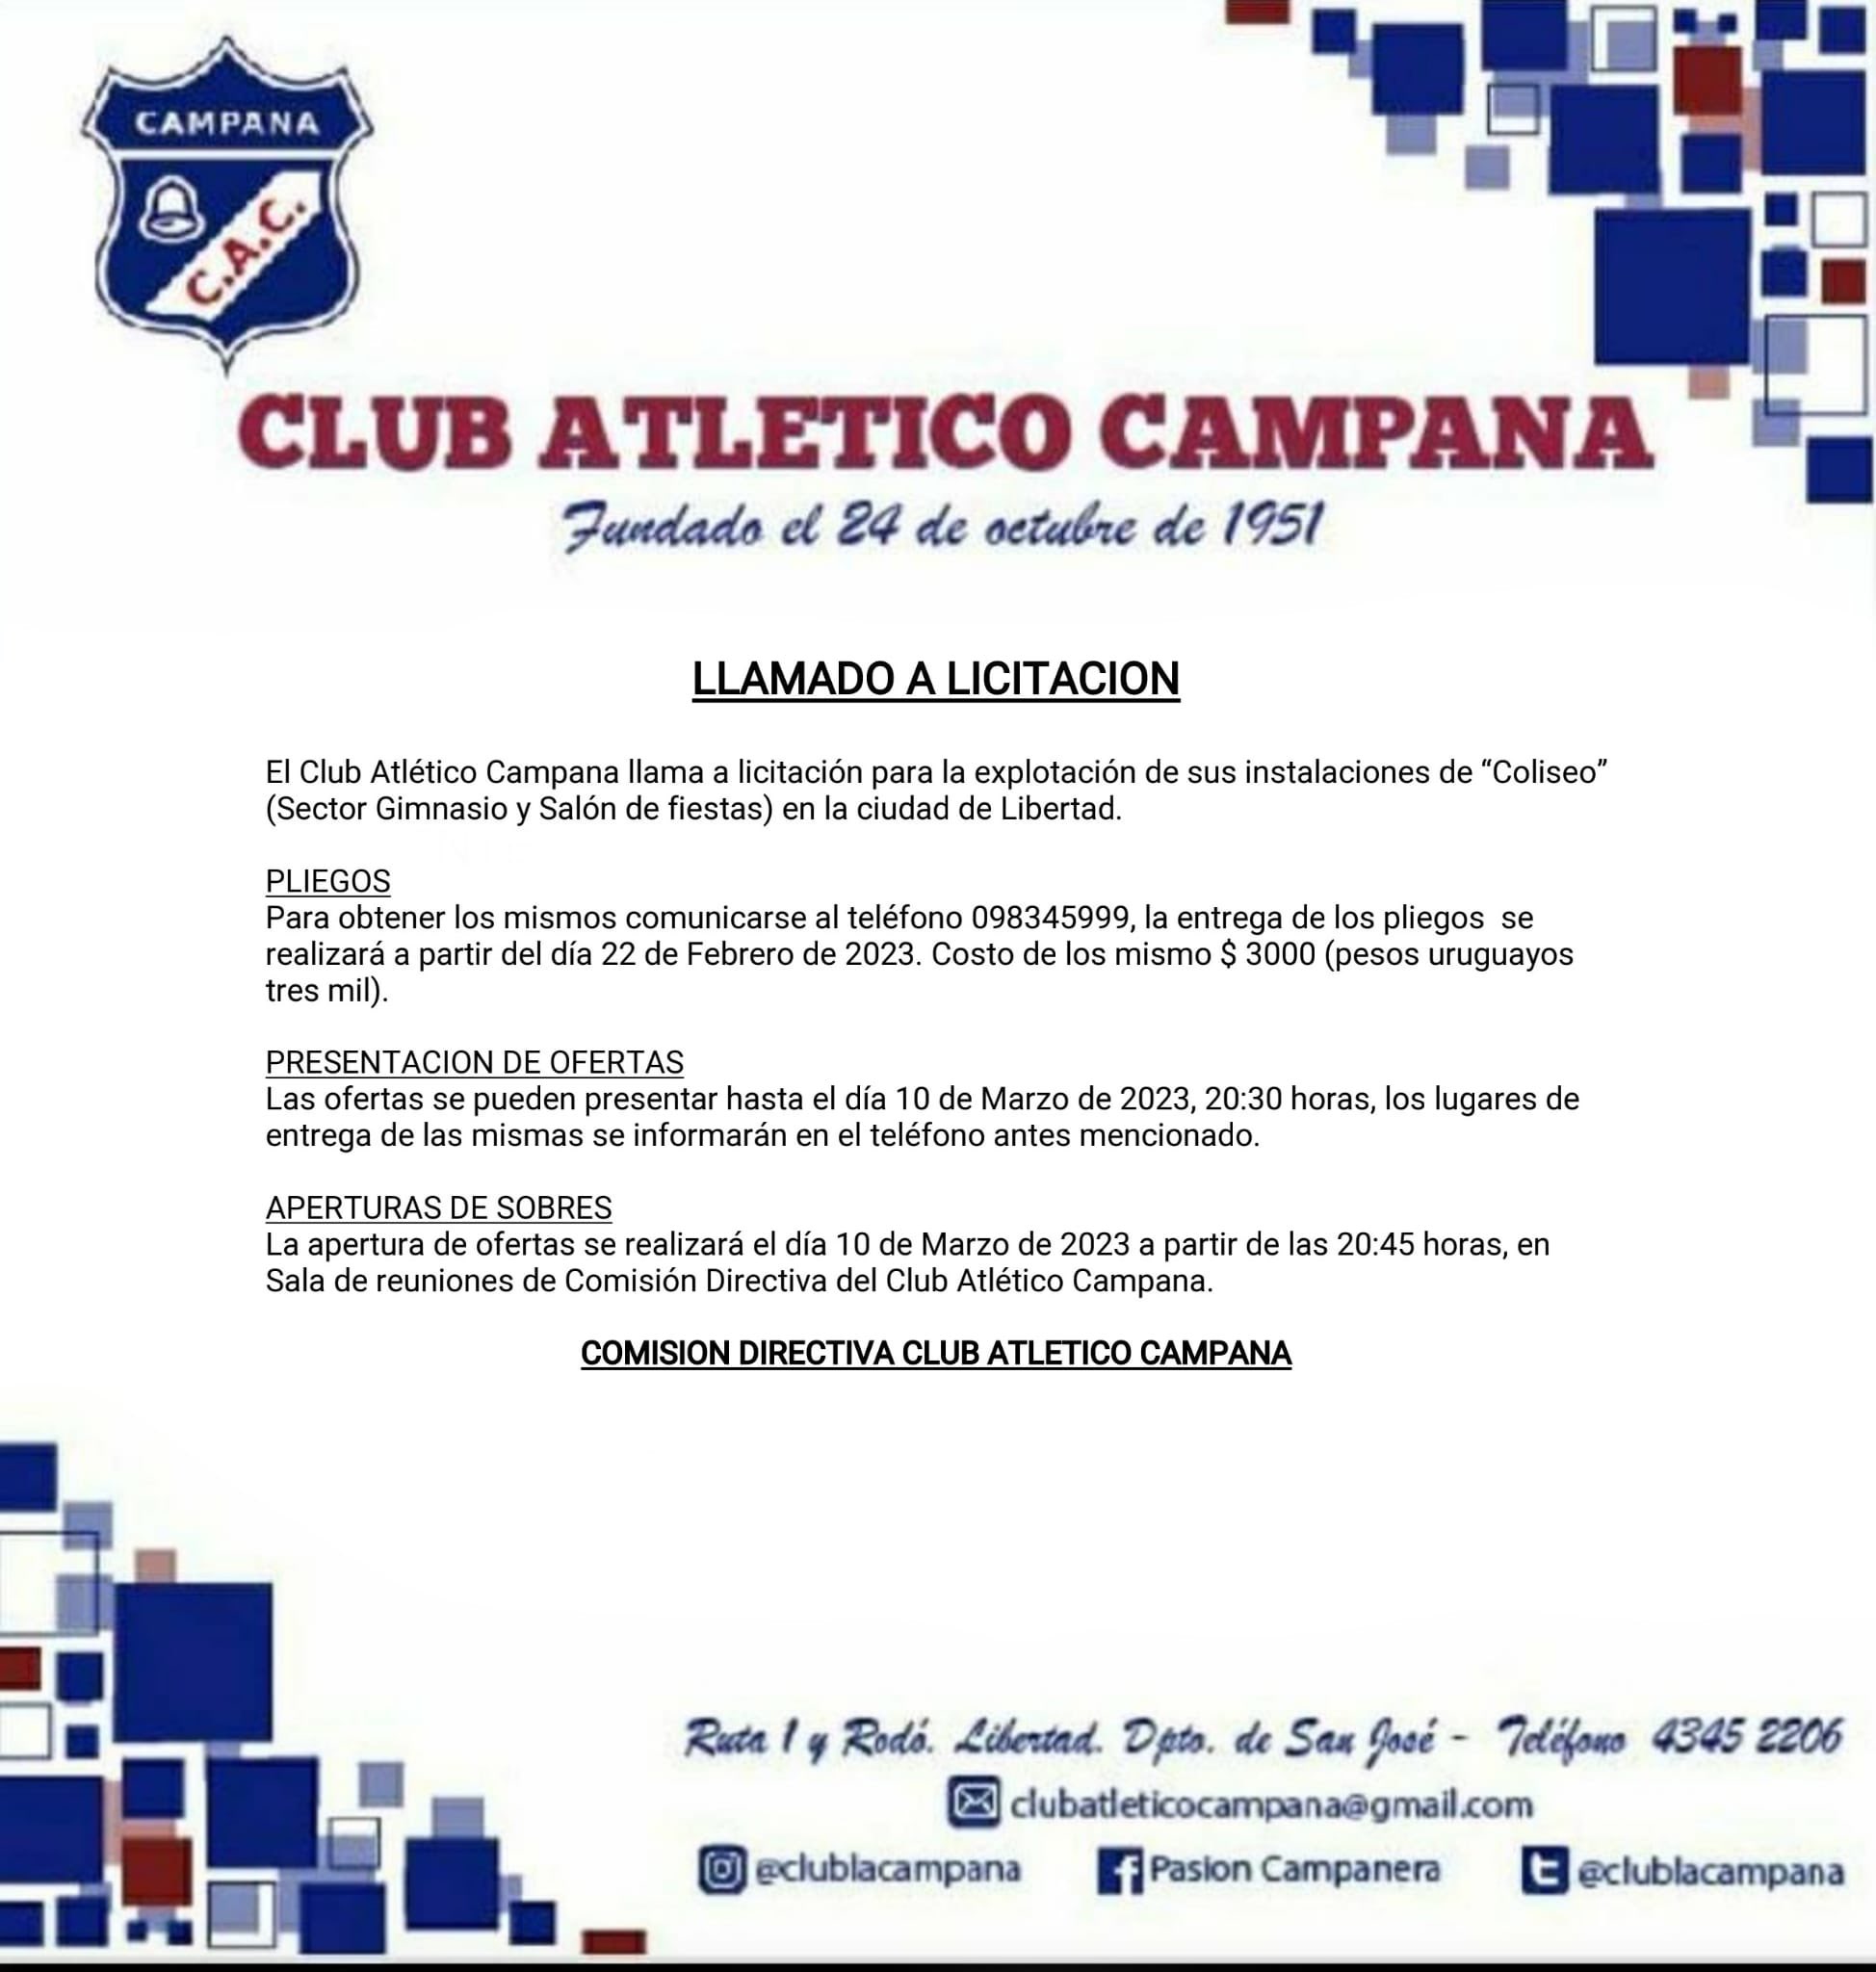 CLUB ATLETICO CAMPANA ????? (@clublacampana) / Twitter